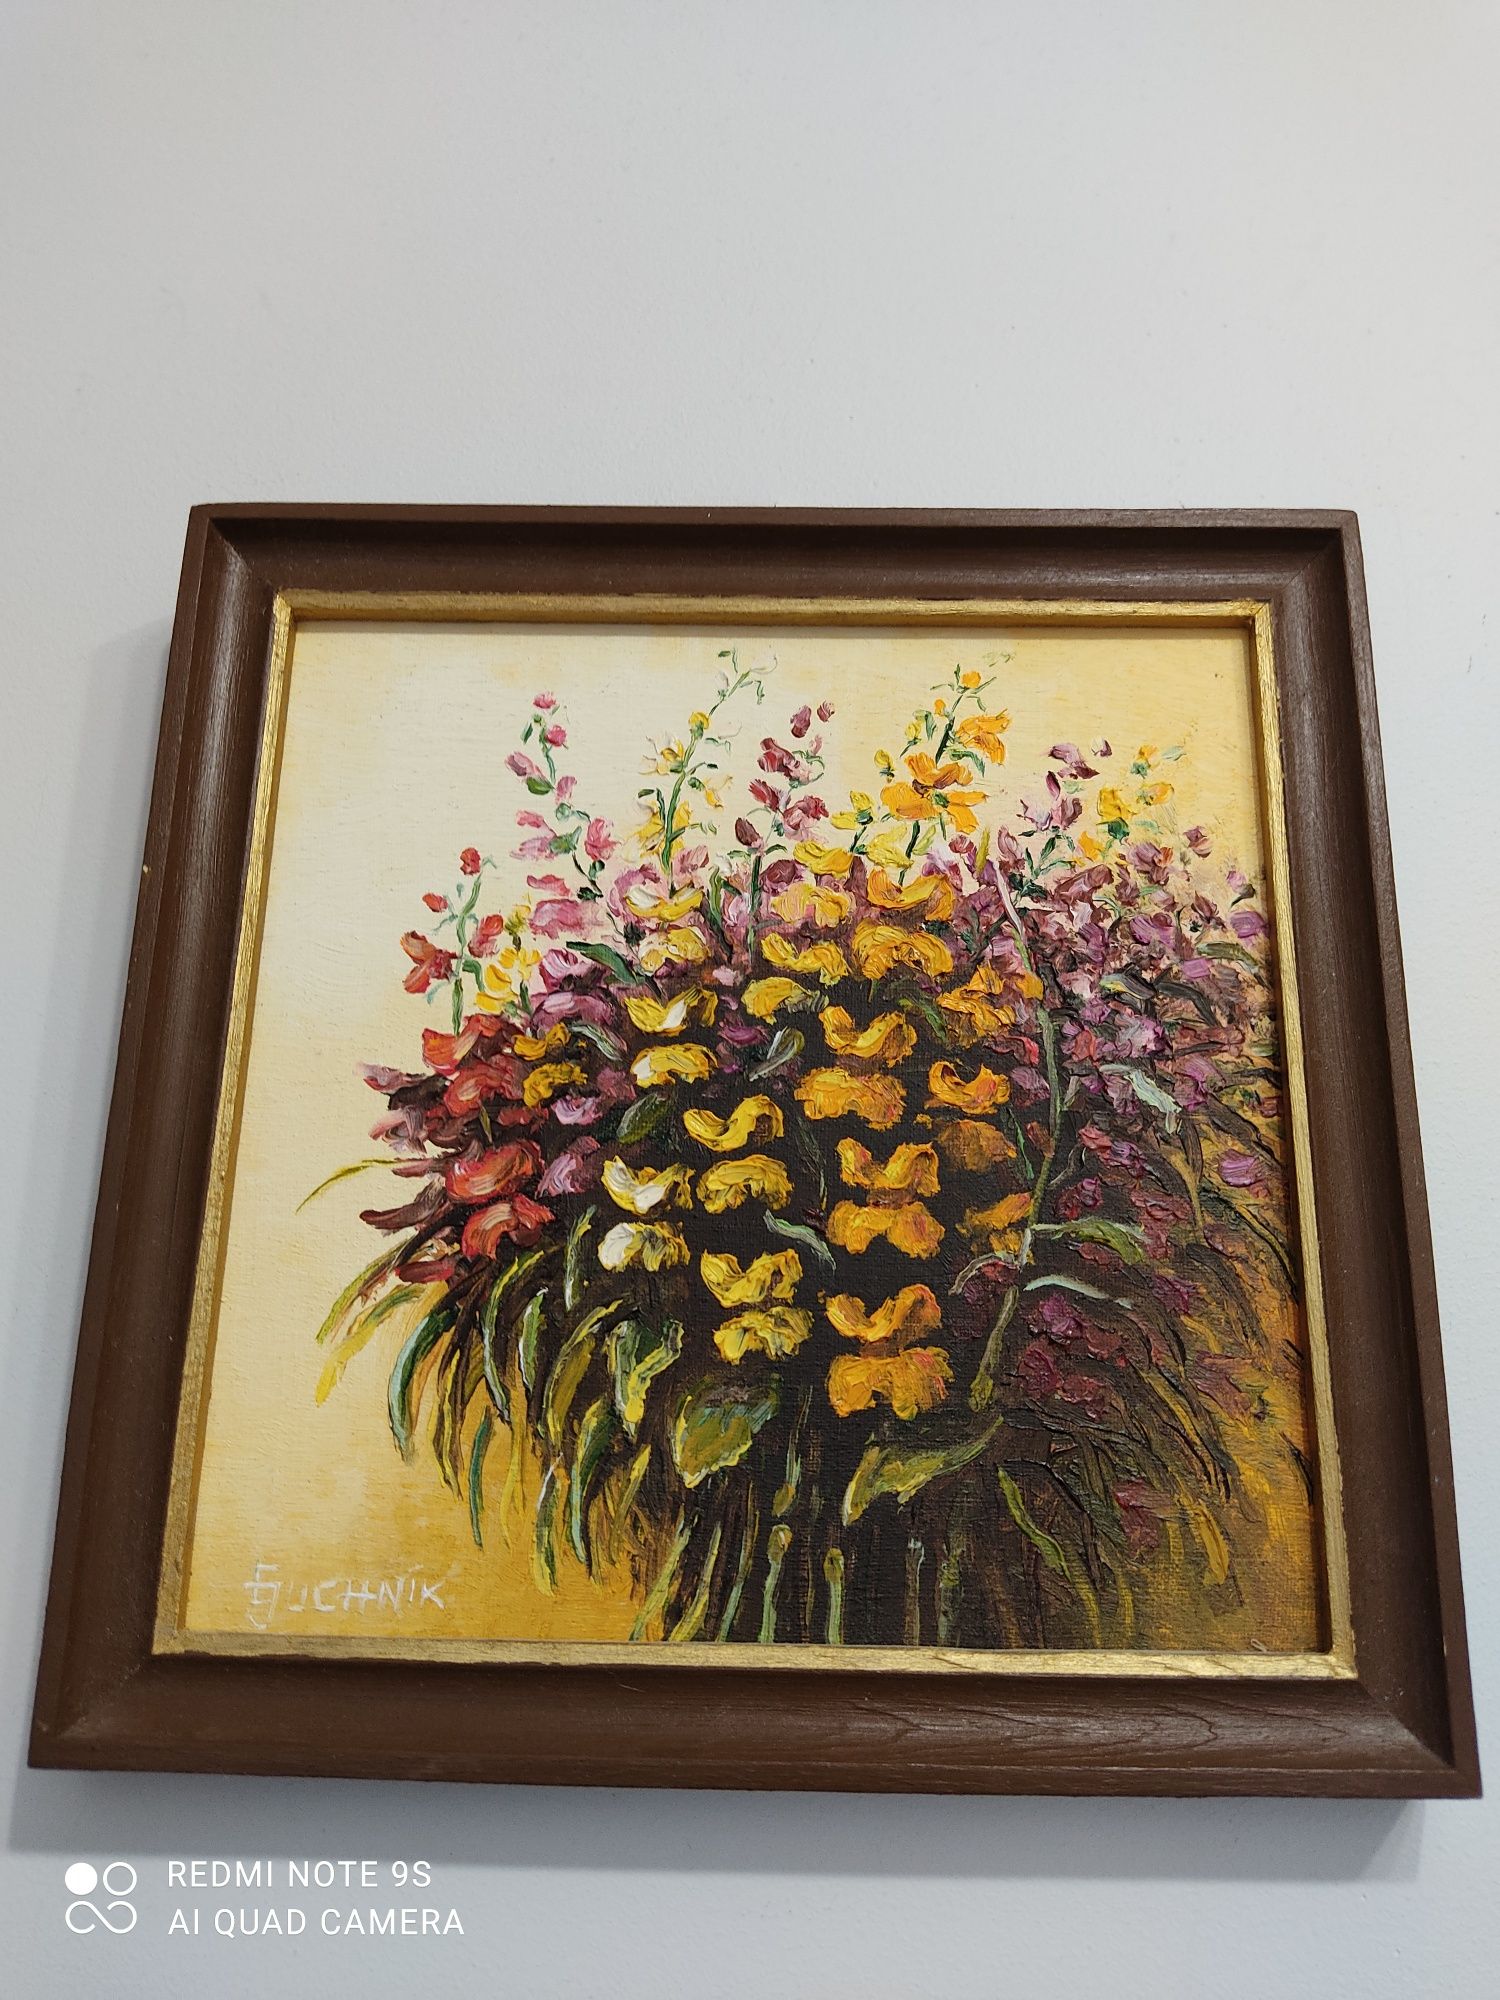 E. Juchnik "Kwiatowo"-wspaniały obraz olejny na płycie!